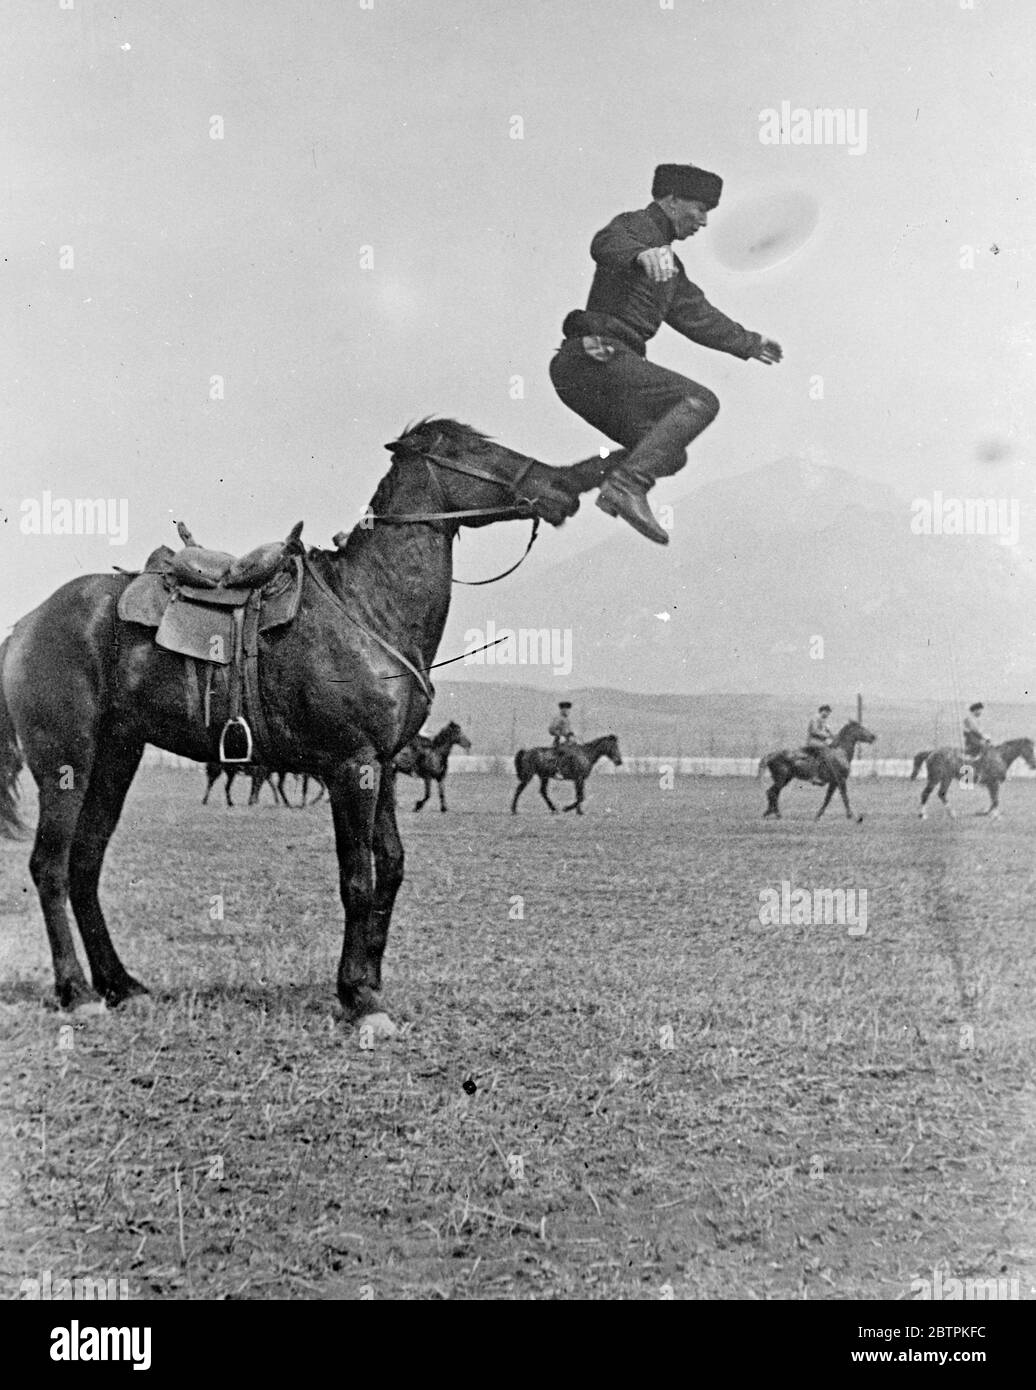 Immersione al naso! . Trick riding è la ricreazione preferita dei contadini di montagna del Caucaso settentrionale , e la loro incredibile acrobazie a cavallo , i gests conosciuti localmente come ' Jigitovka ' , hanno guadagnato loro grande fama . Foto spettacoli , un contadino Jigit ( trick rider ) della regione di Karachayevsk del Caucaso settentrionale che sembra saltare nello spazio dal naso del cavallo . 3 maggio 1936 Foto Stock